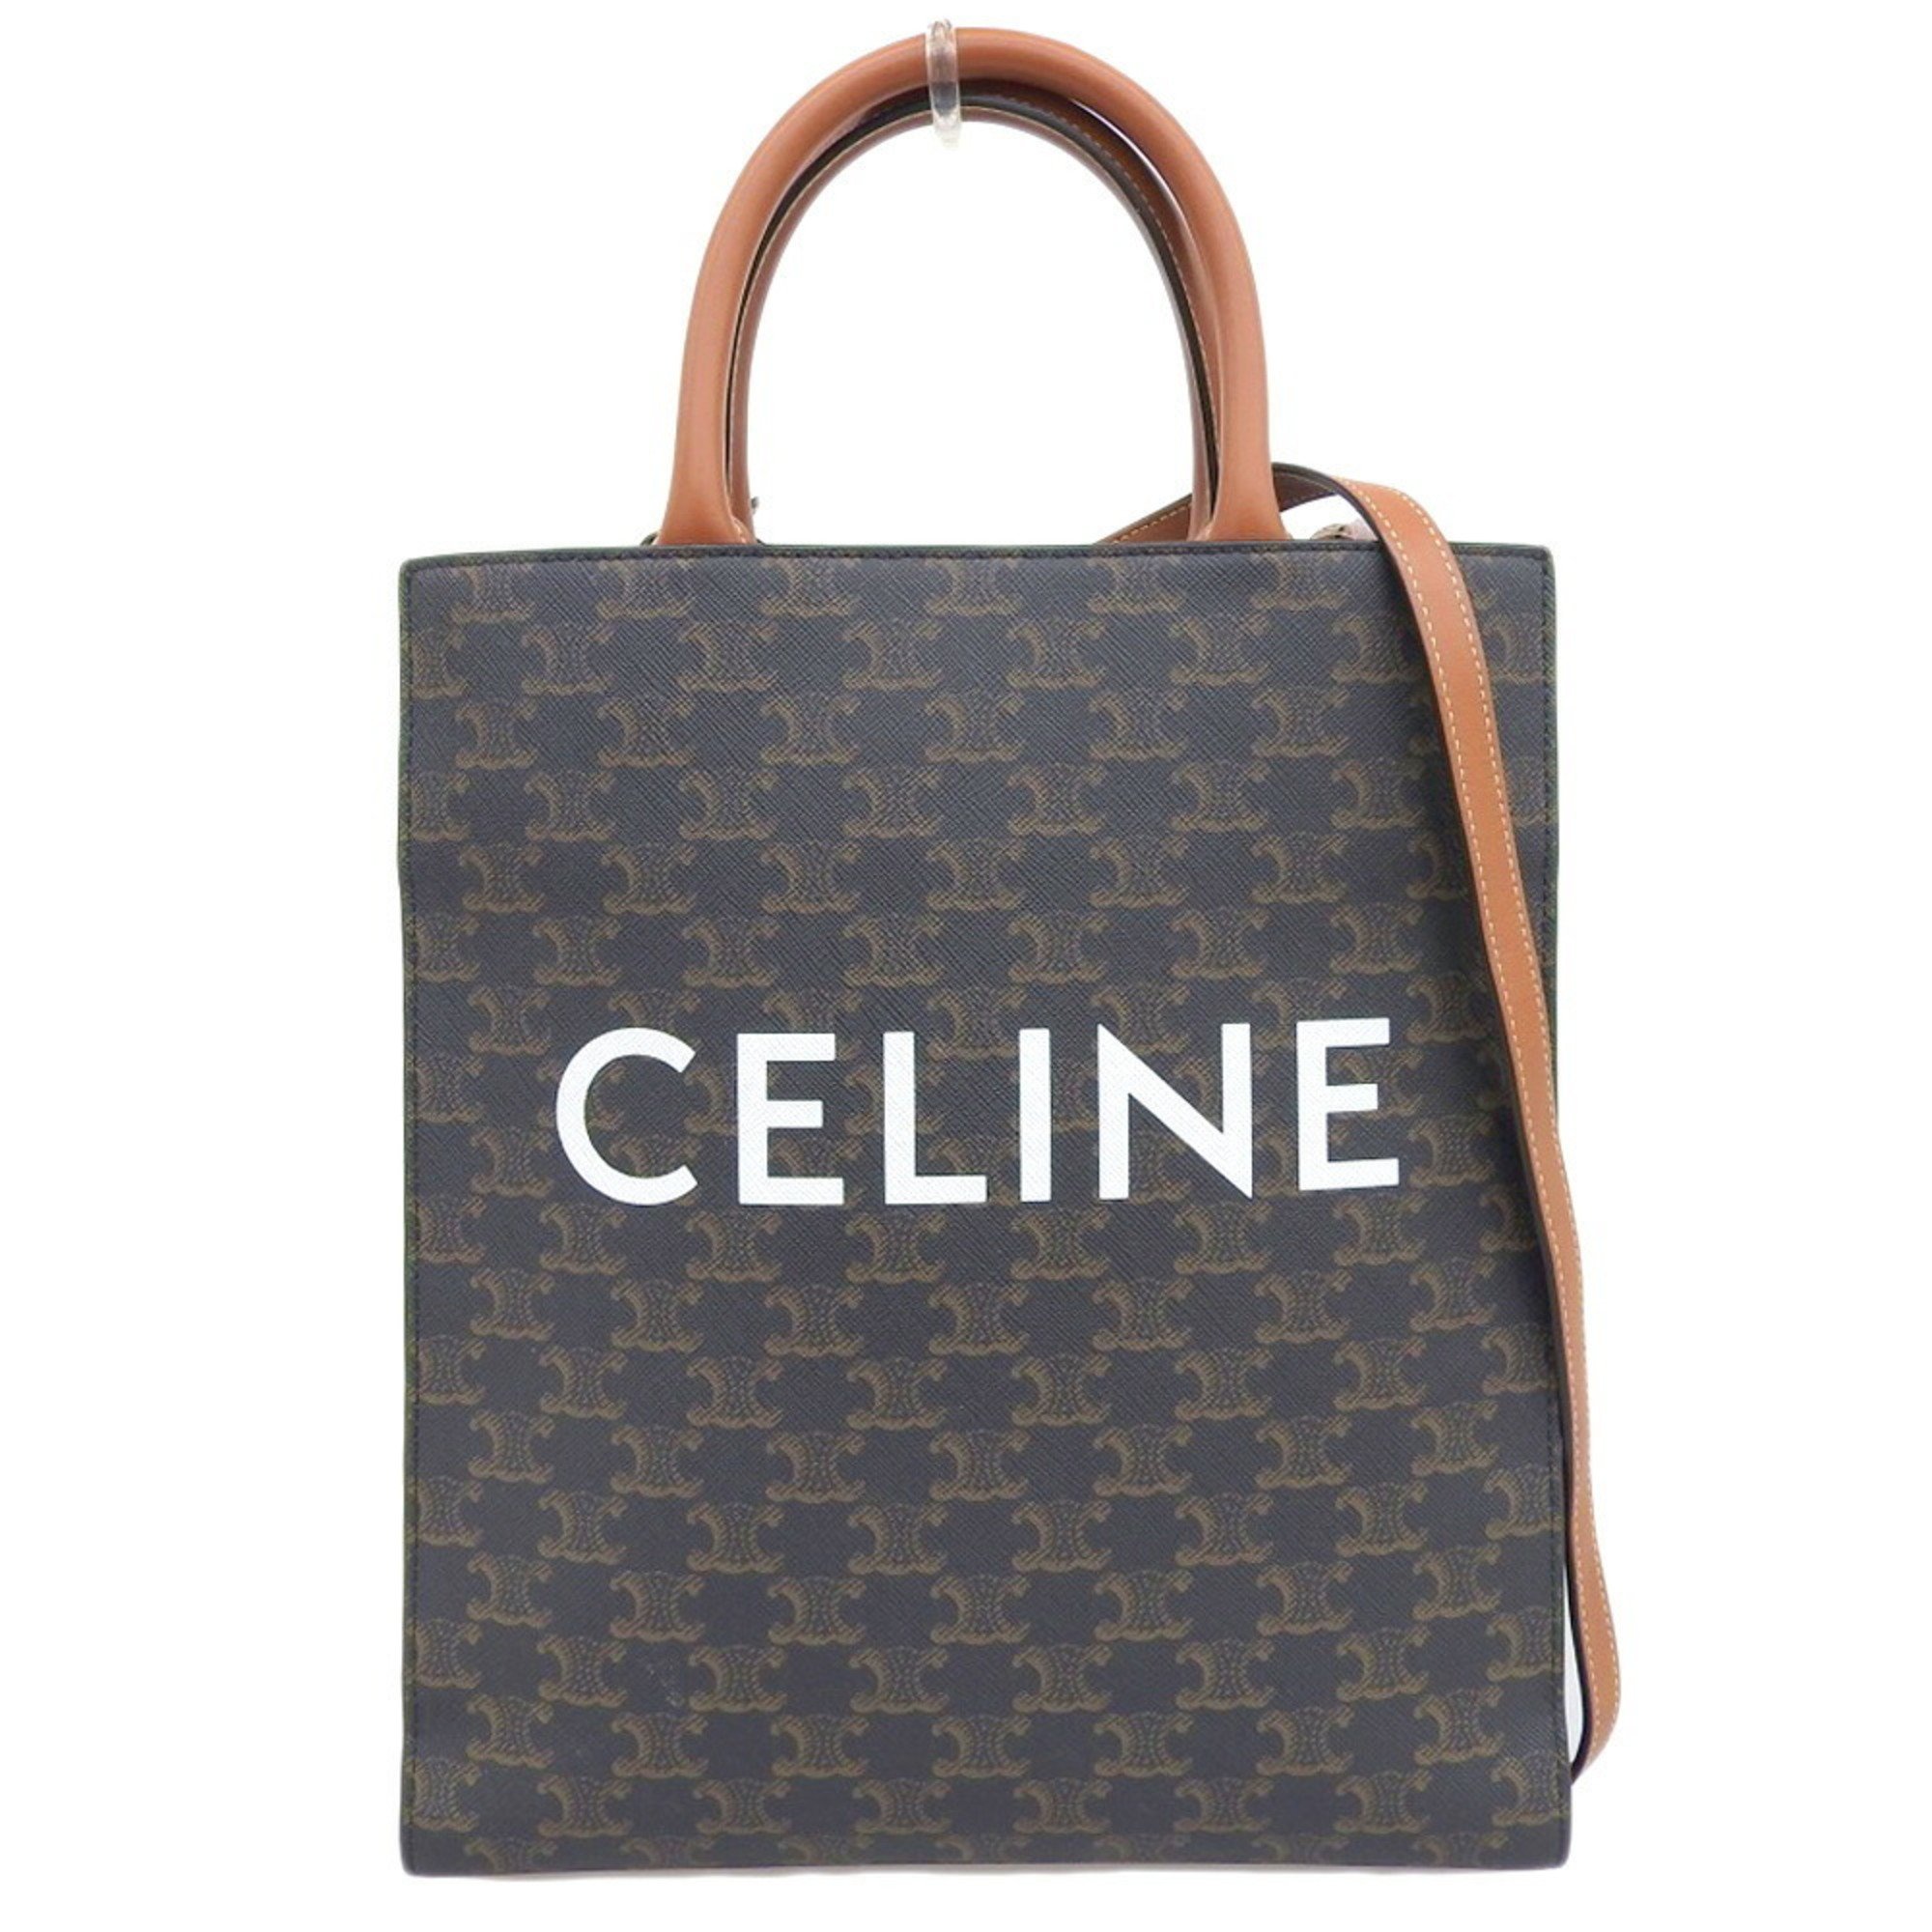 Celine CELINE Triomphe Small Vertical Cover Tote Bag Shoulder Brown 191542